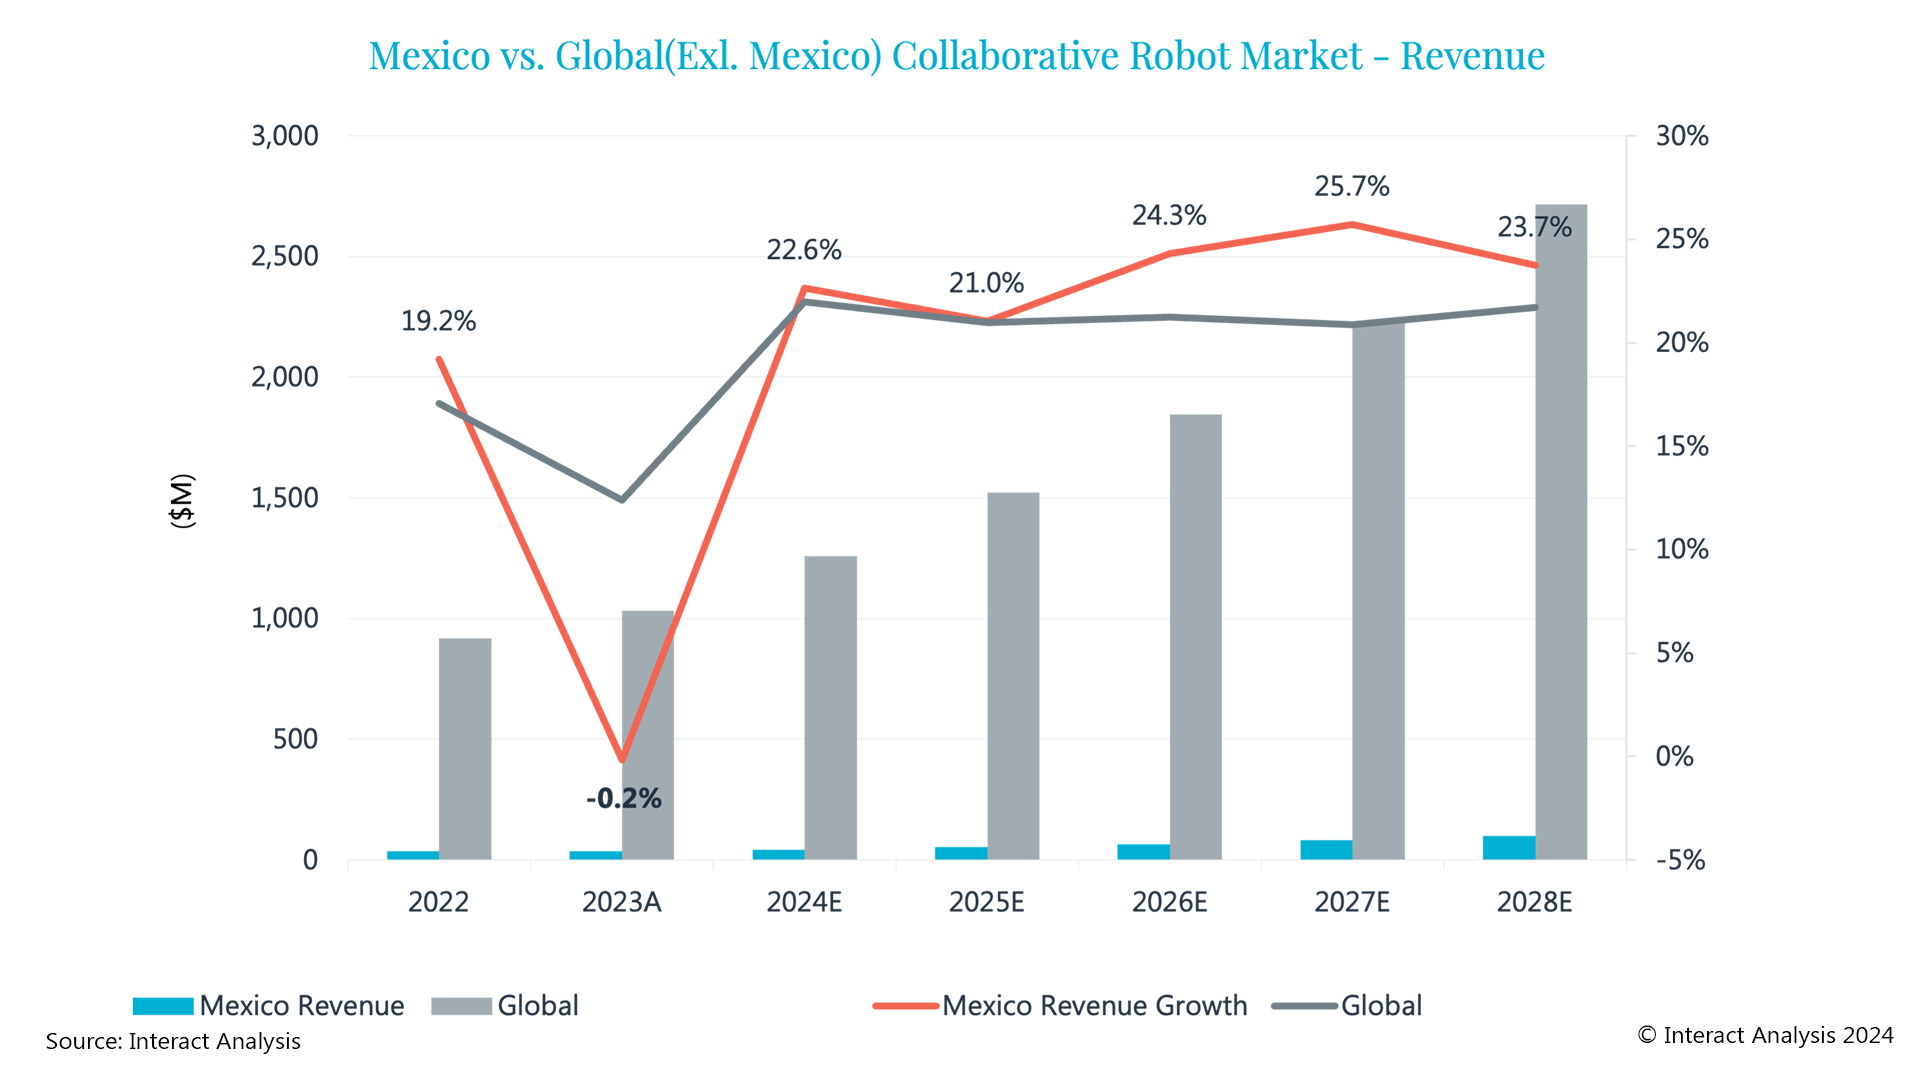 墨西哥协作机器人市场：唯一负增长，仍旧有希望